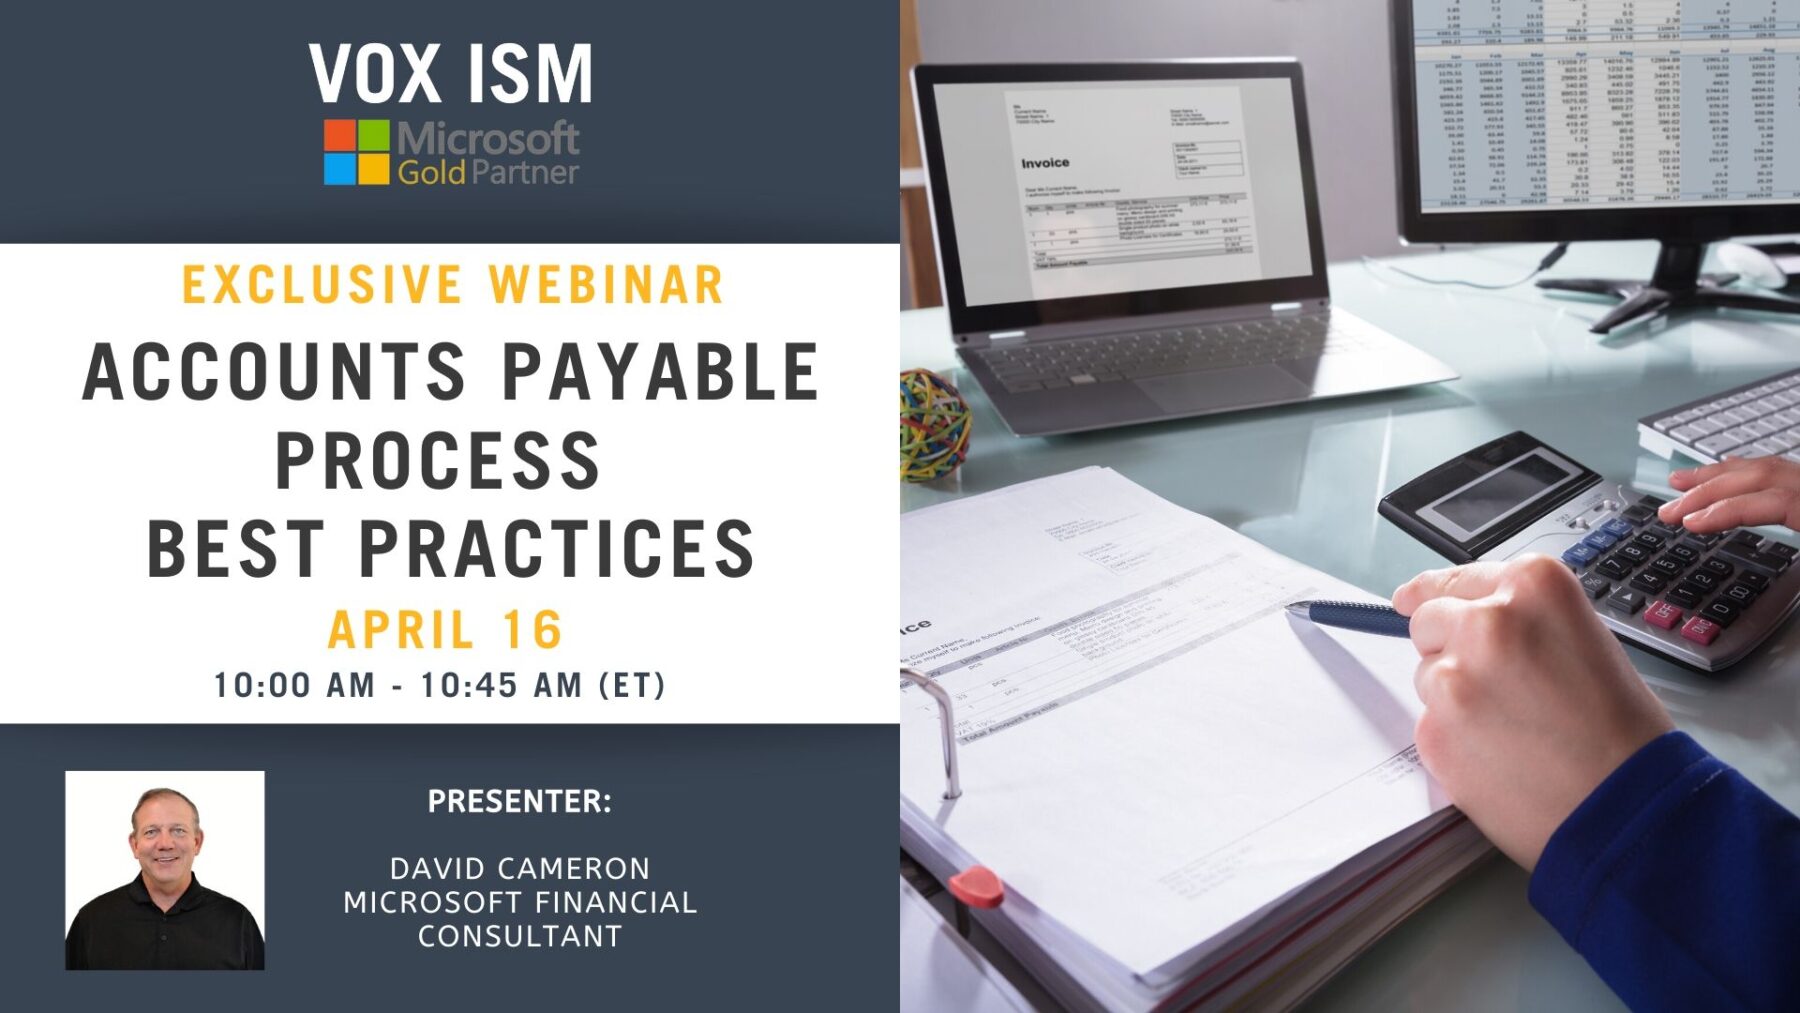 Accounts Payable Best Practices - April 16 - Webinar_VOX ISM